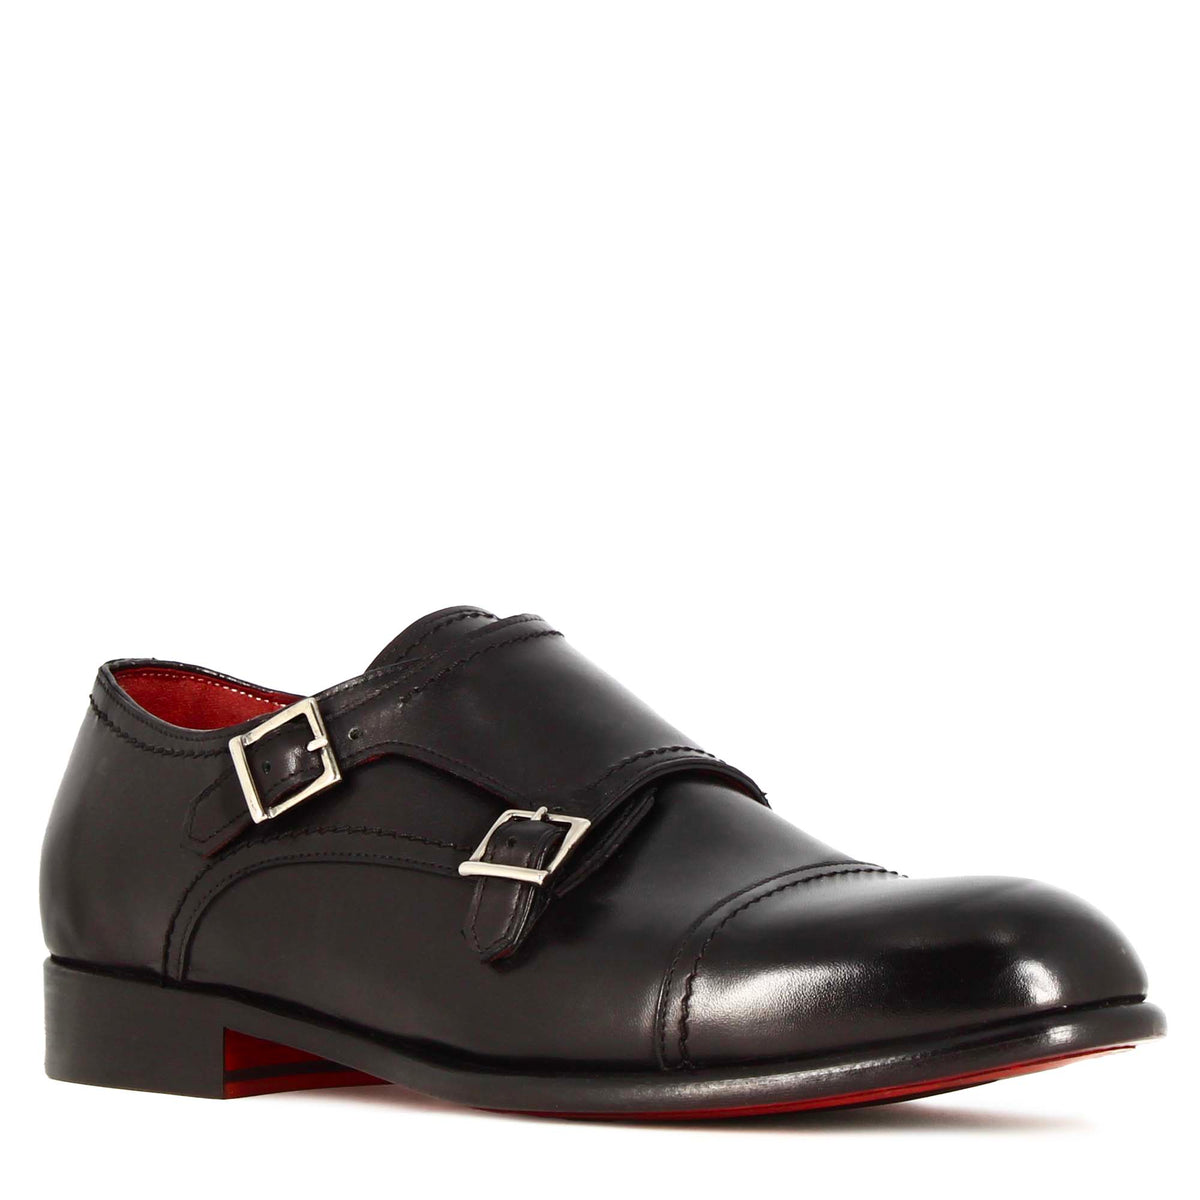 Men's double buckle shoe in black suede